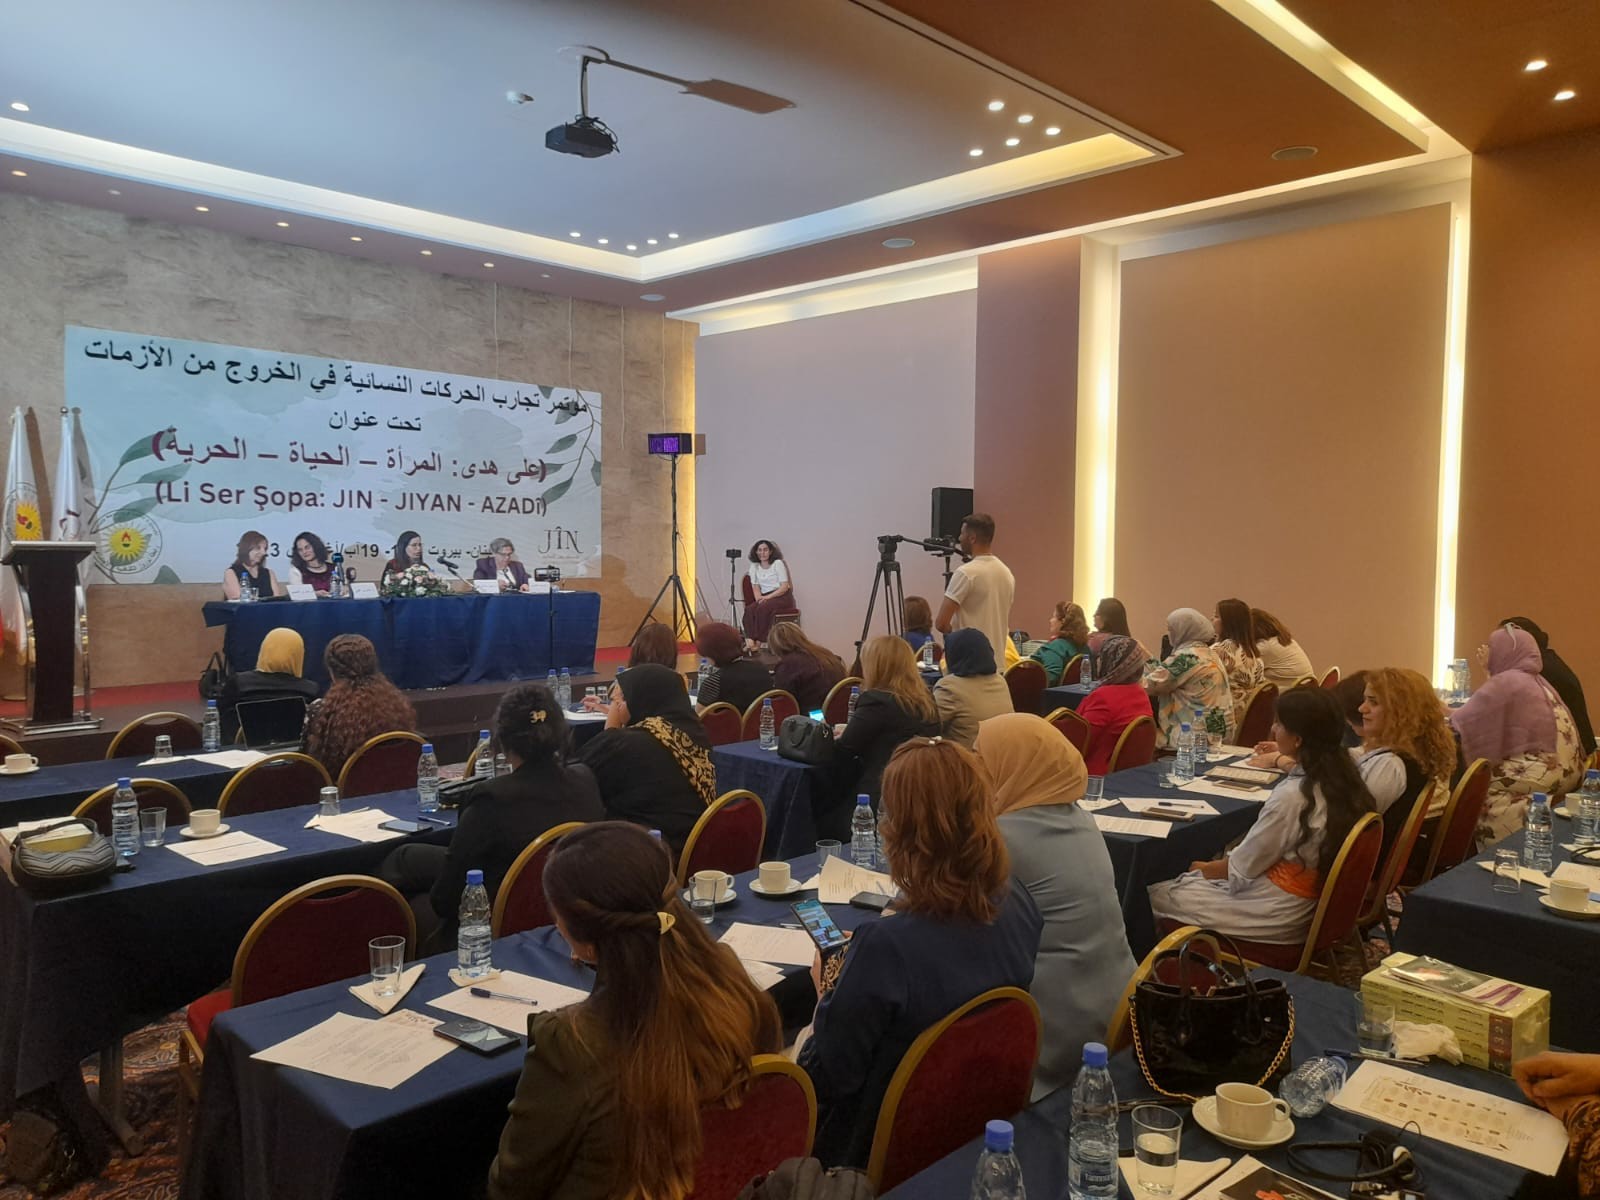 На конференции в Бейруте обсудили последствия вмешательства международной системы для женщин